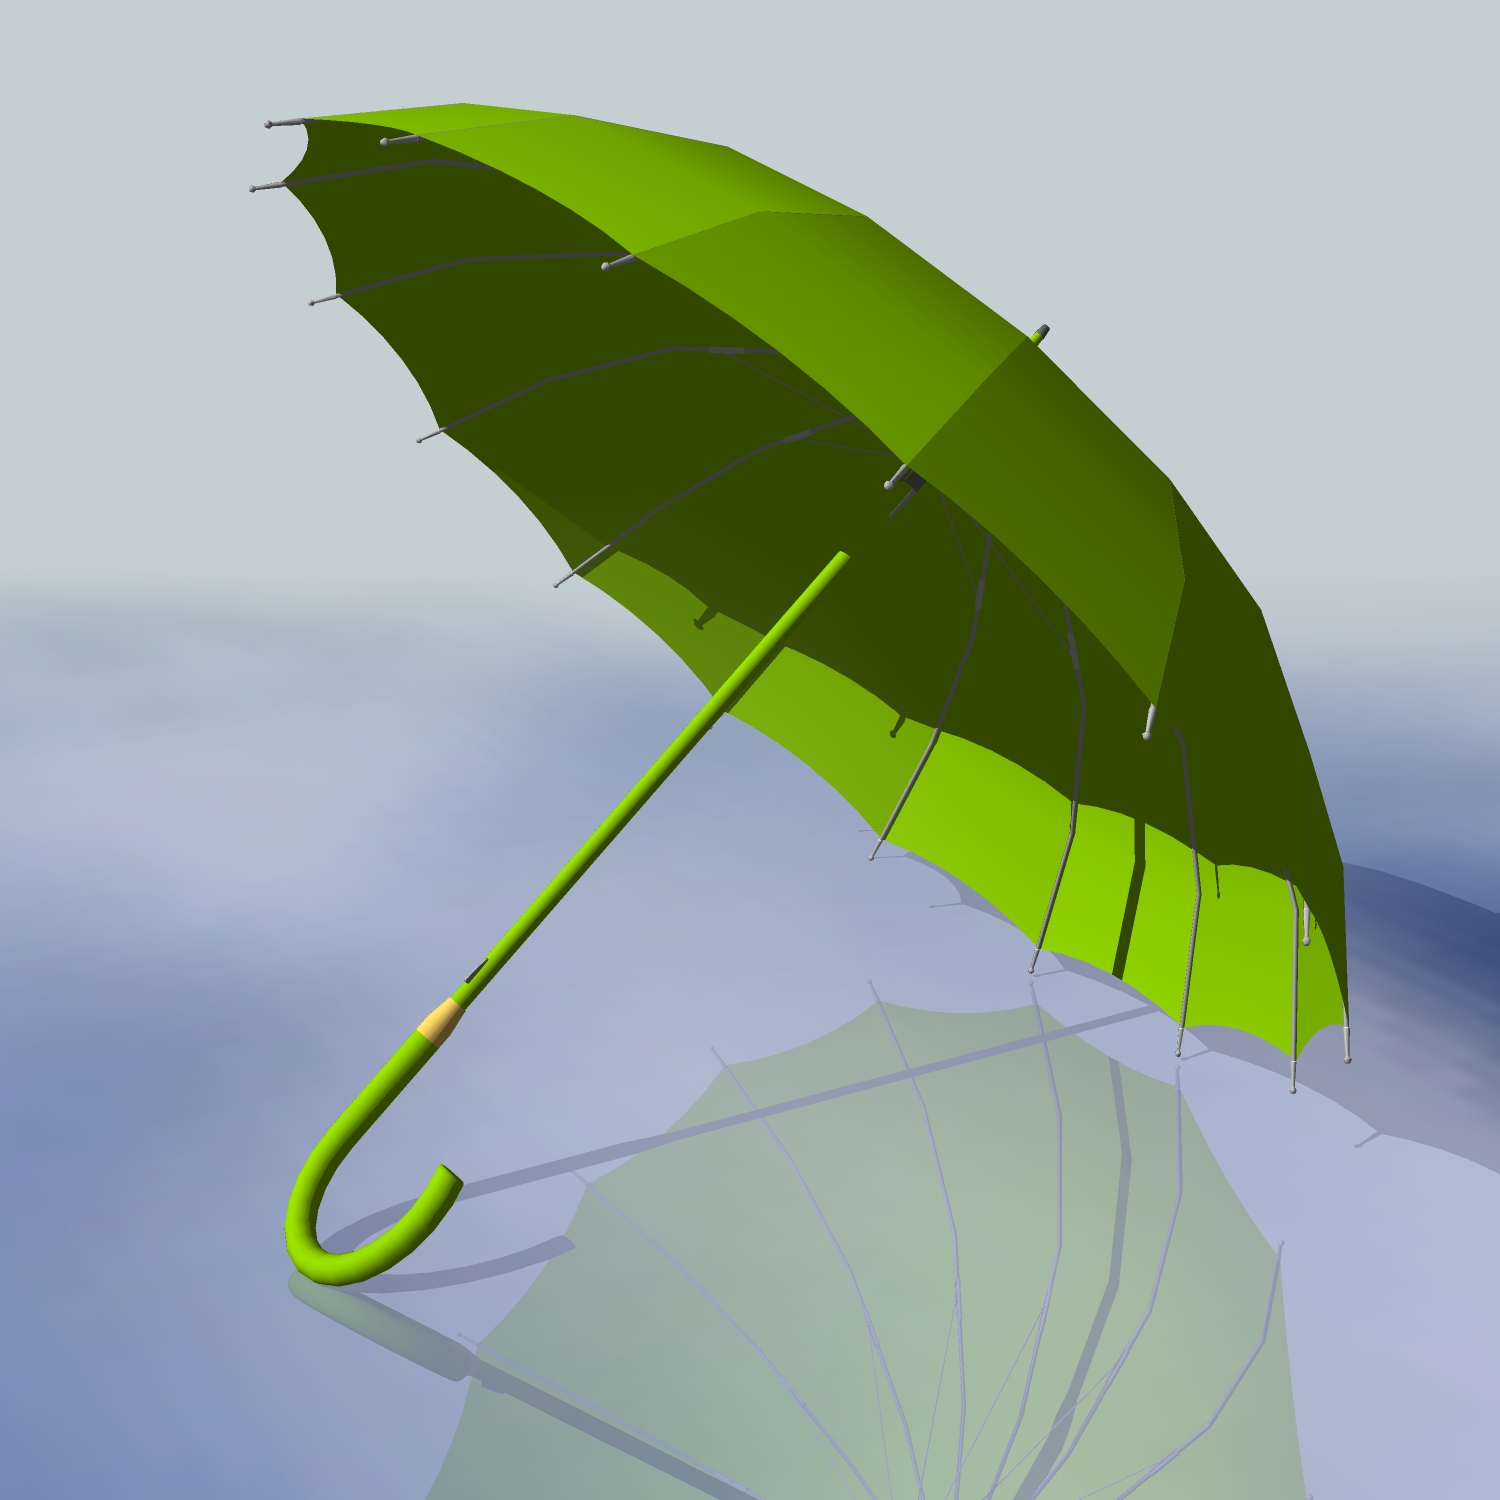 绿色雨伞_141_140816 - sketchup模型库 - 毕马汇 nb